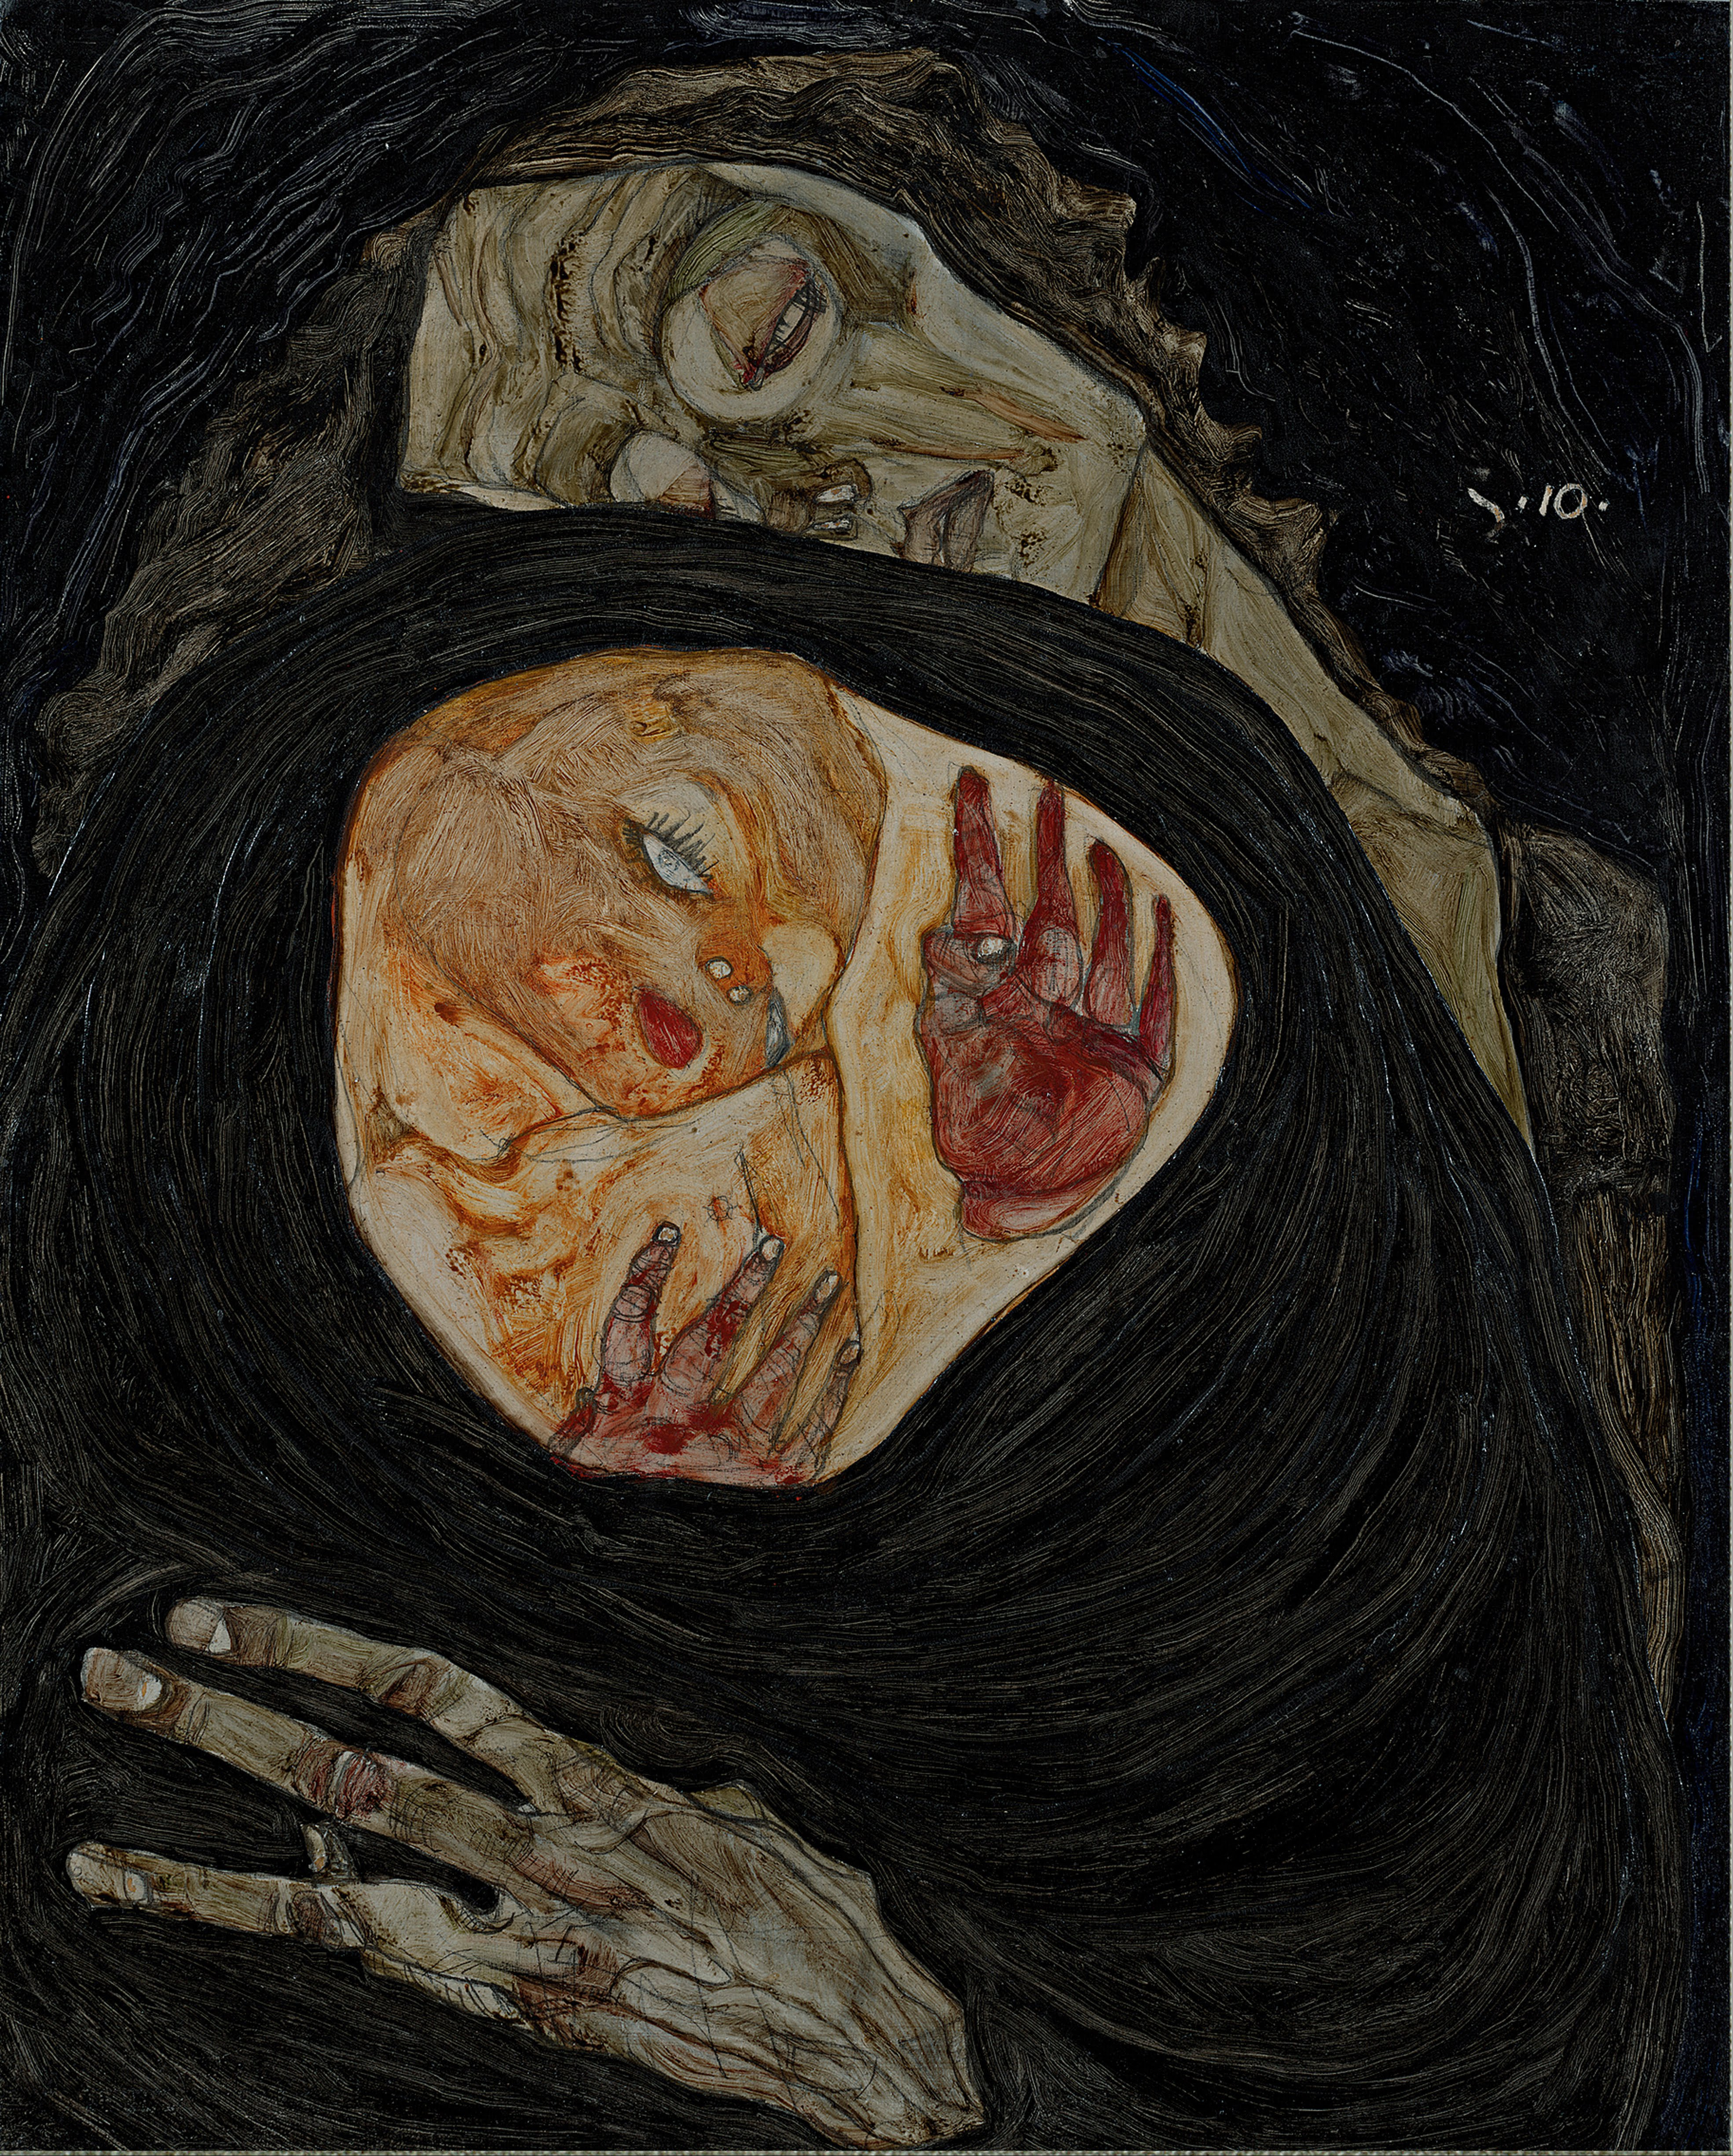 Tote Mutter by Egon Schiele - ca. 1910 - 32 x 25.7 cm Private Sammlung